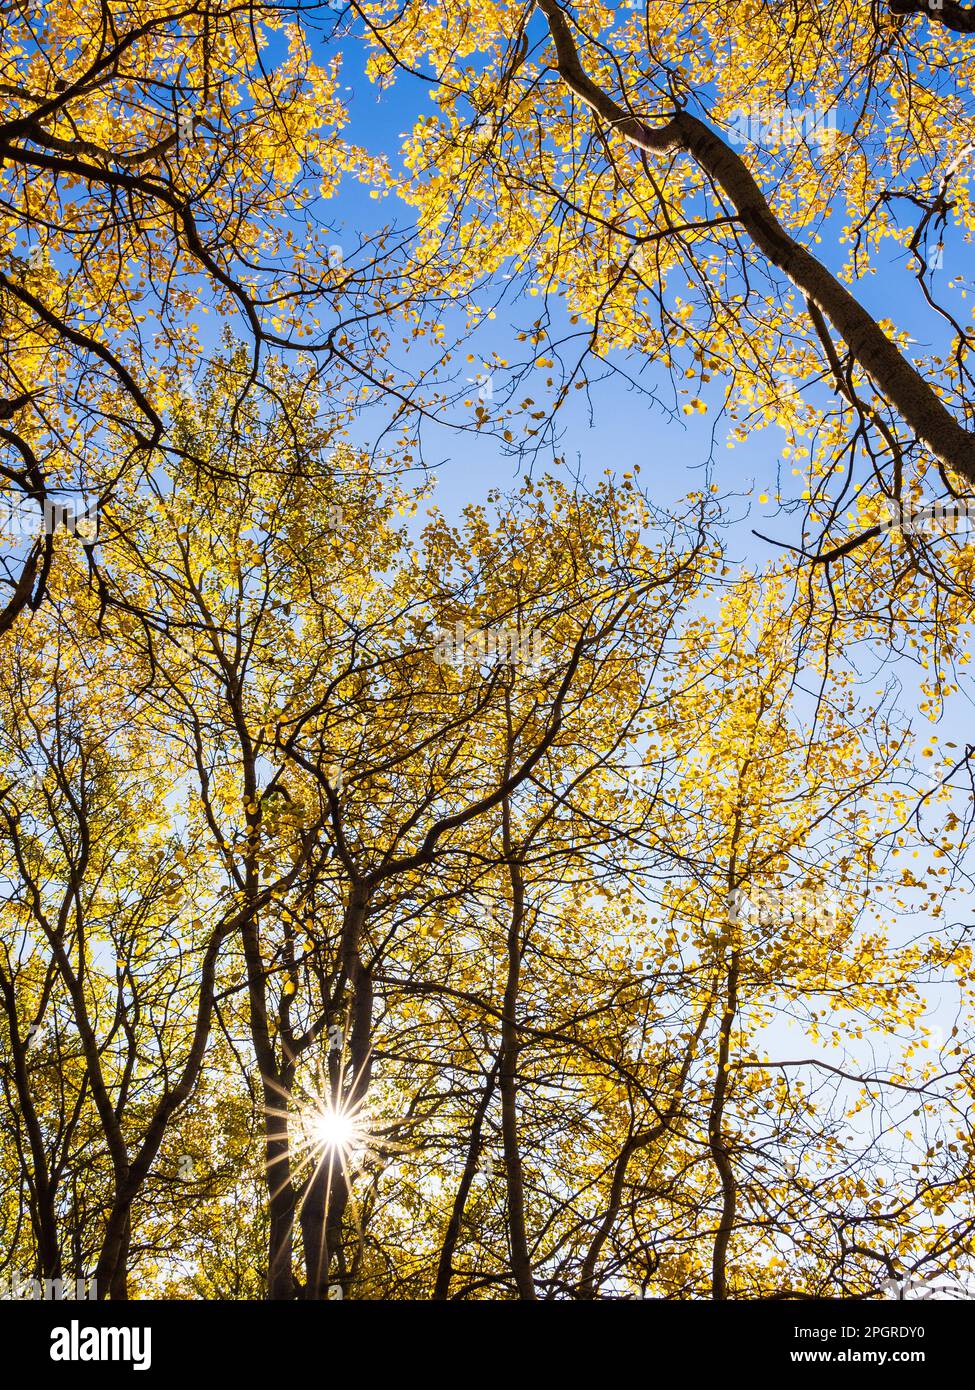 Une scène automnale tranquille d'une forêt suédoise, avec une vue à angle bas d'une branche de peuplier au soleil et ses feuilles illuminées par le sunstar. Banque D'Images